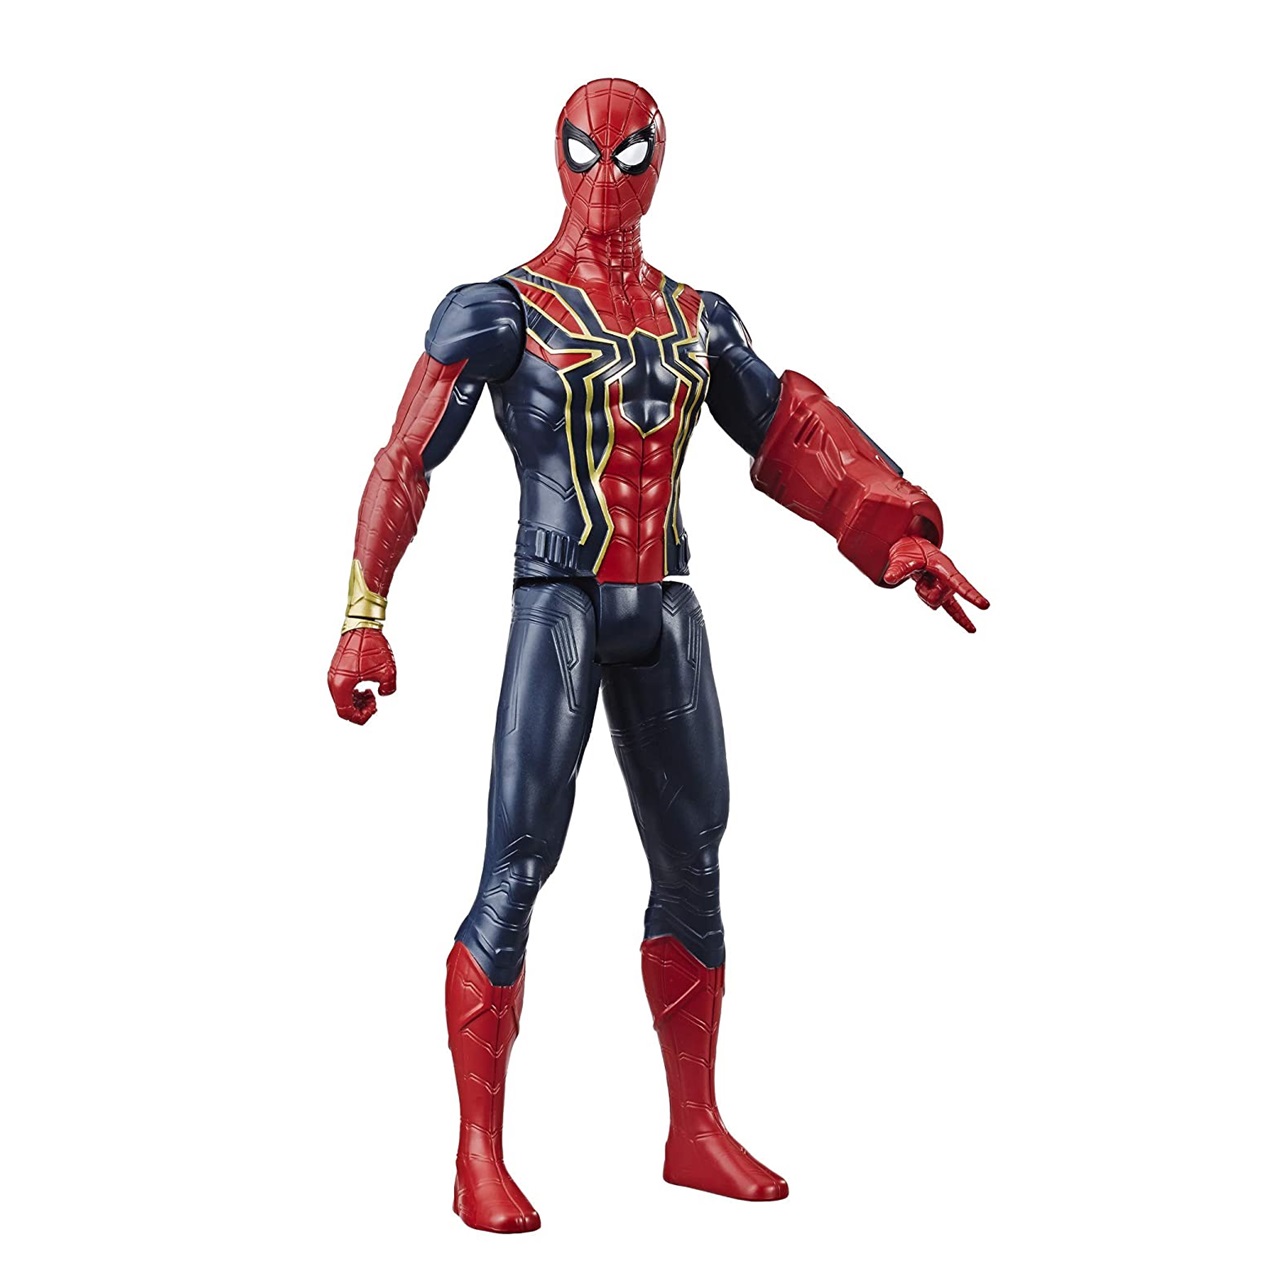 Iron Spider + Ronin Marvel Avengers End Game Power FX Titan Hero